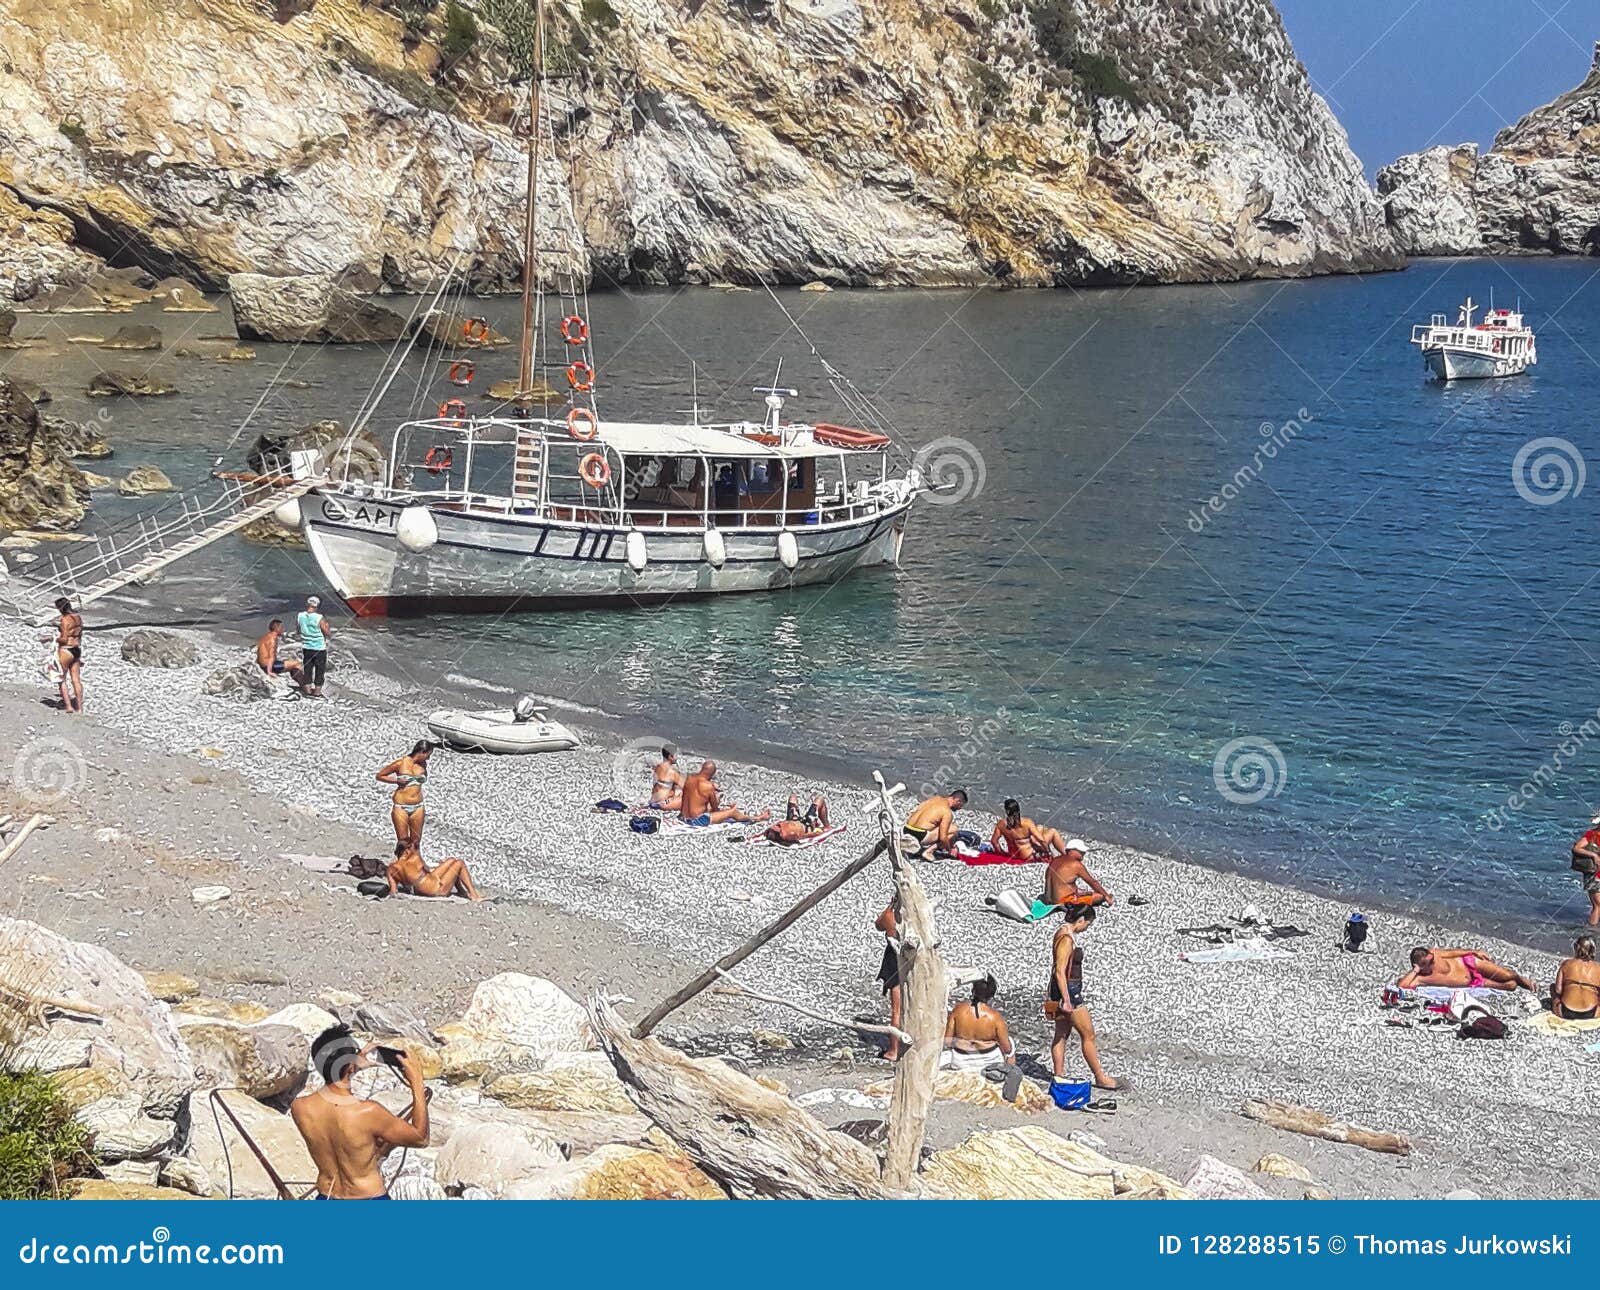 Kastro Beach, Skiathos, Greece Editorial Image - Image of holiday ...